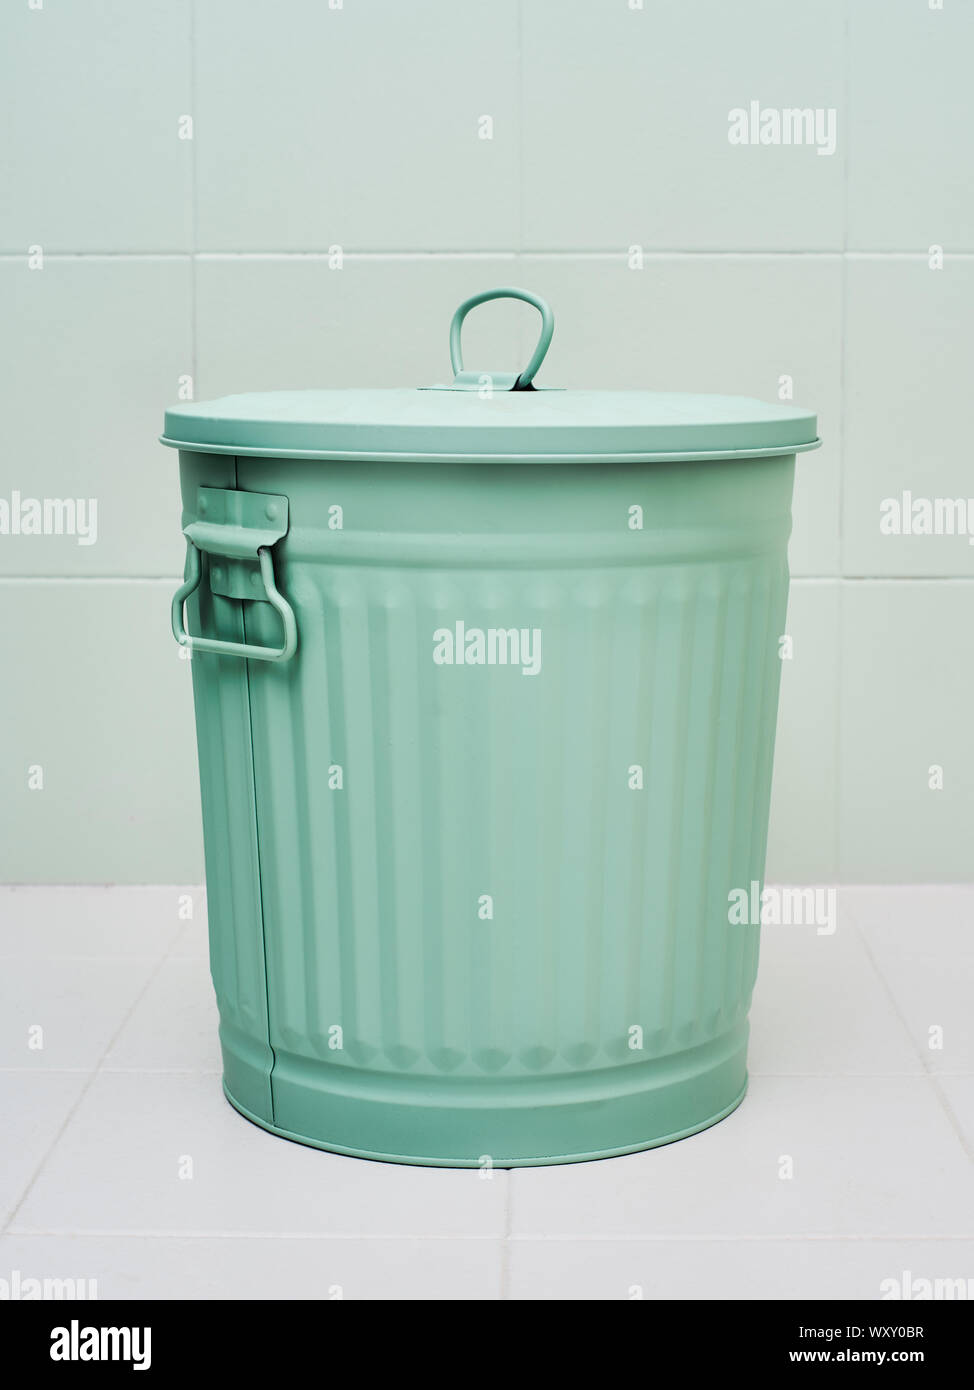 Ein Metall Papierkorb oder Abfalleimer Grün auf weißem Hintergrund Stockfoto